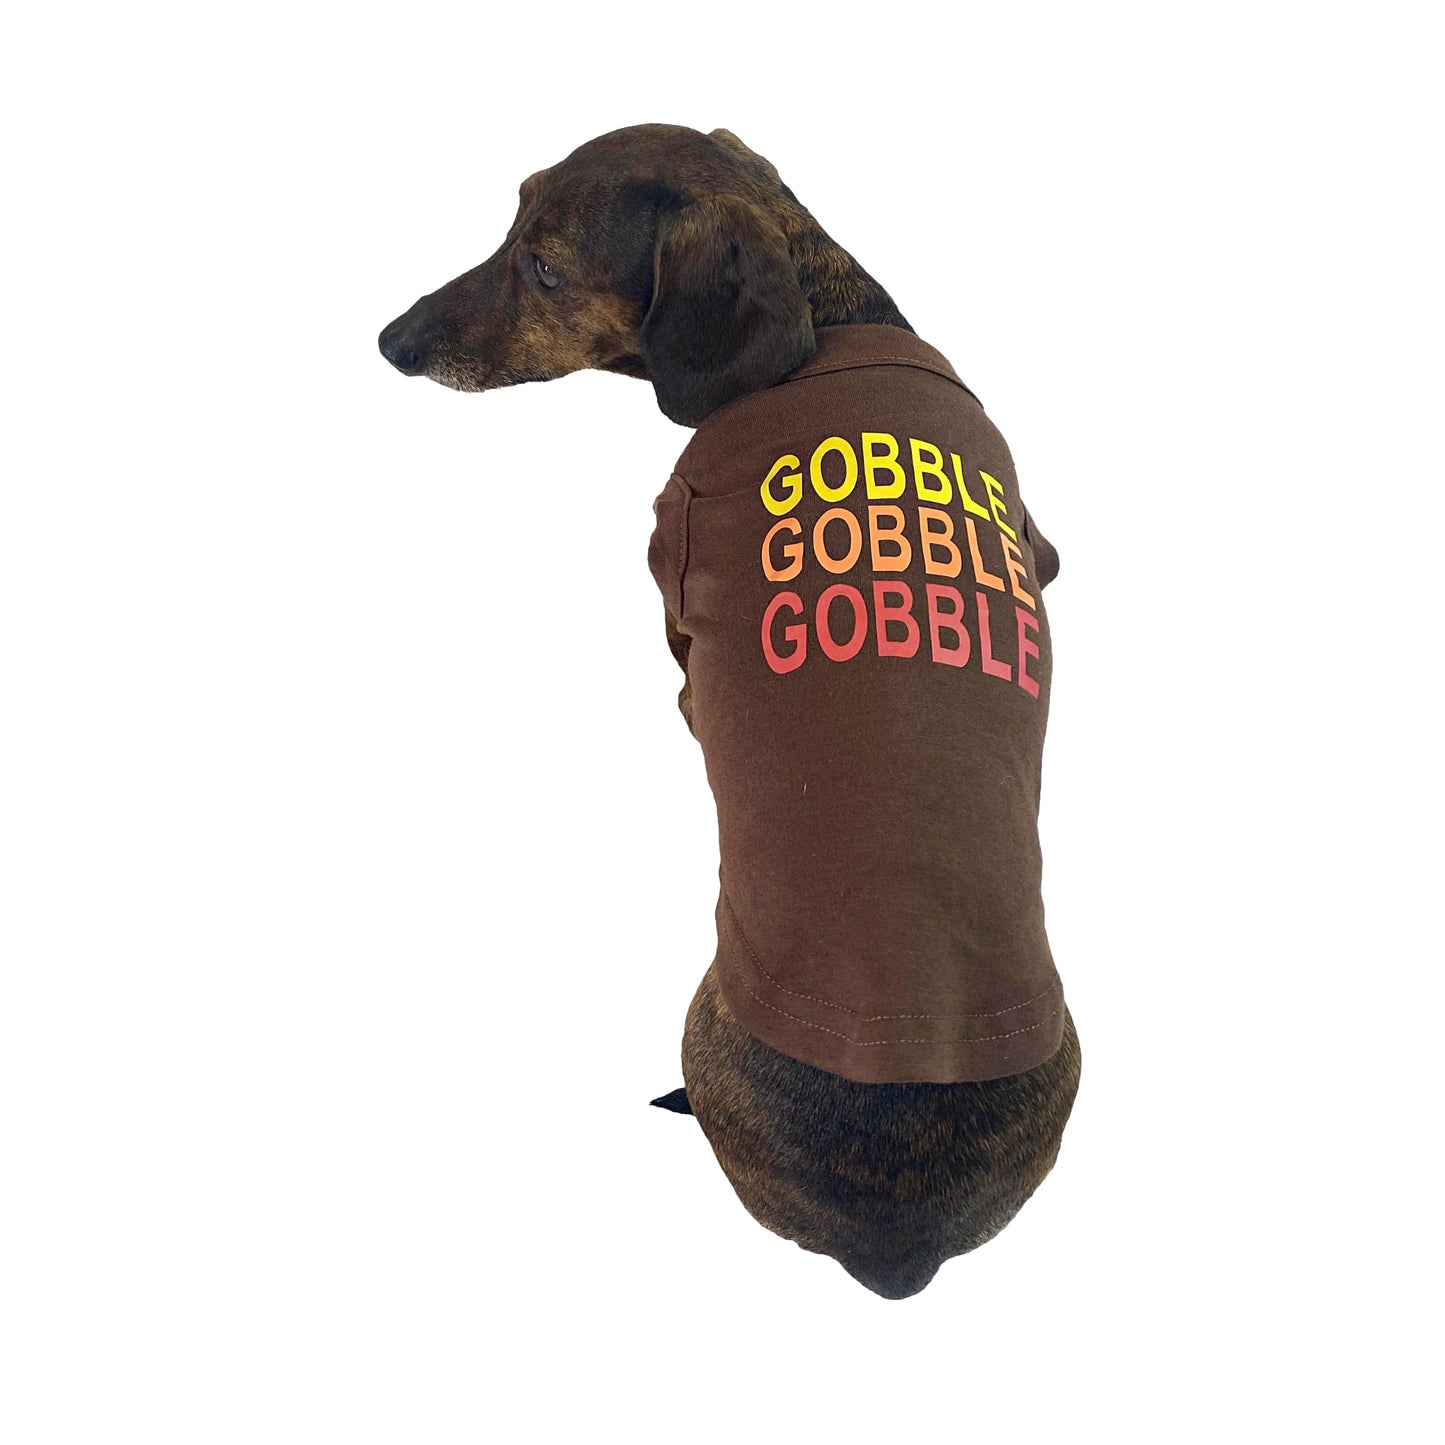 Midlee Gobble Gobble Gobble Dog Thanksgiving Shirt